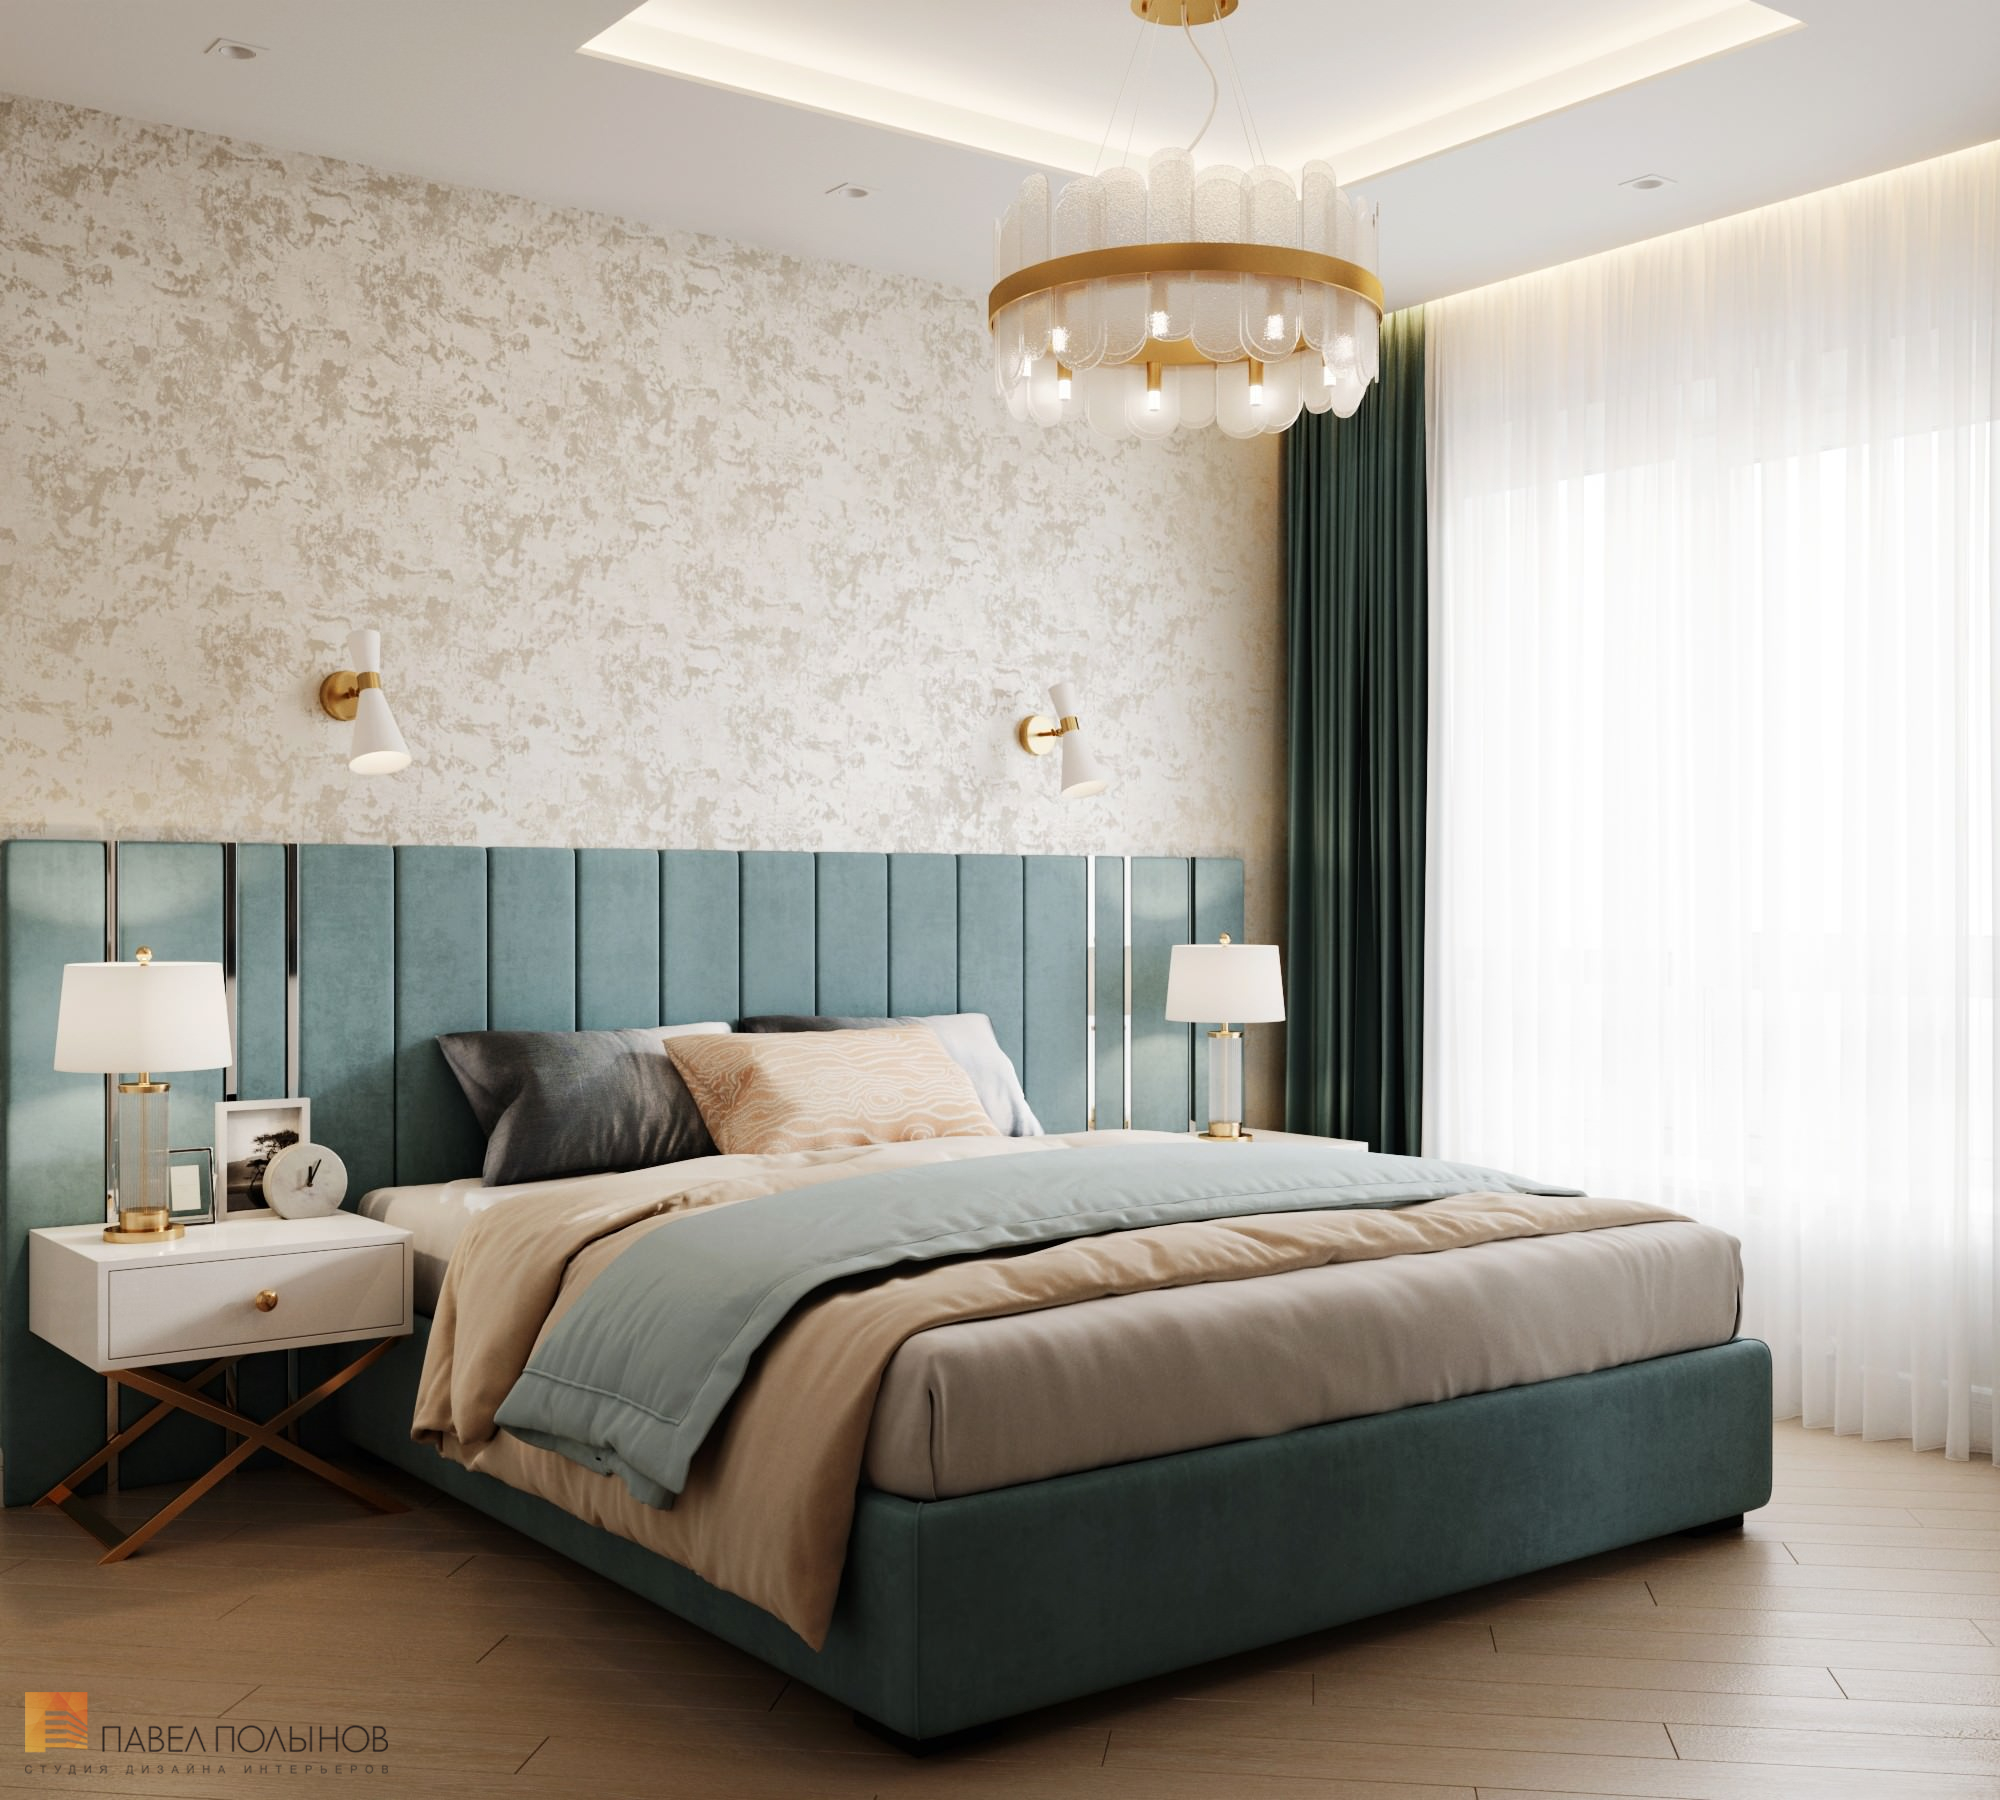 Фото спальня из проекта «Квартира в современном стиле, ЖК «Аннино парк», 54 кв.м.»